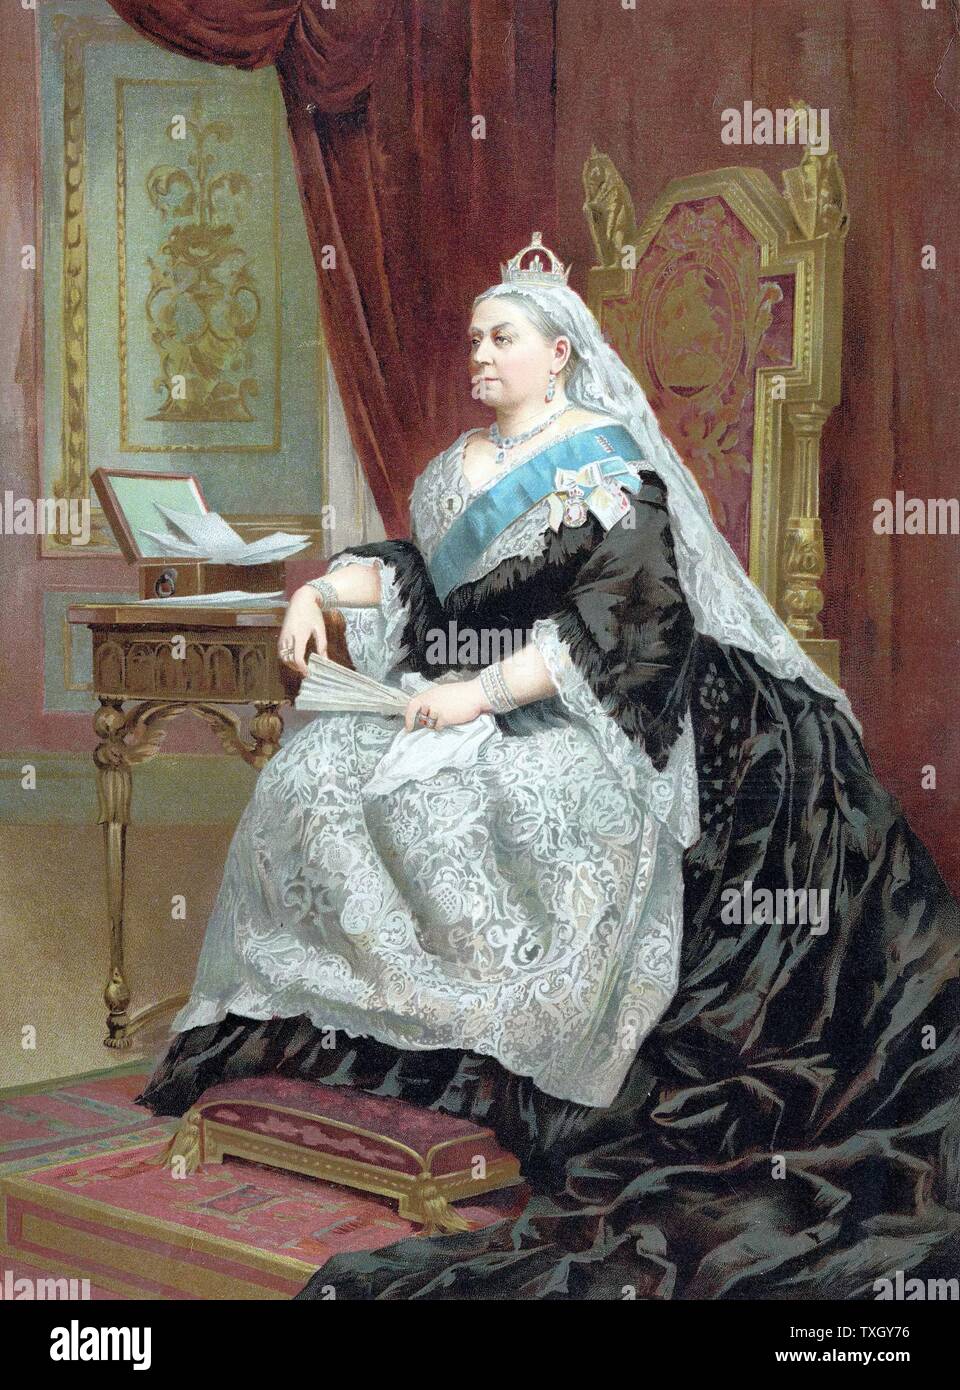 La regina Victoria (1819-1901) la regina del Regno Unito dal 1837, Empress of India dal 1876, incoronato nel 1838. Formale di ritratto della regina al momento del suo Giubileo d oro 1887 Oleograph Foto Stock